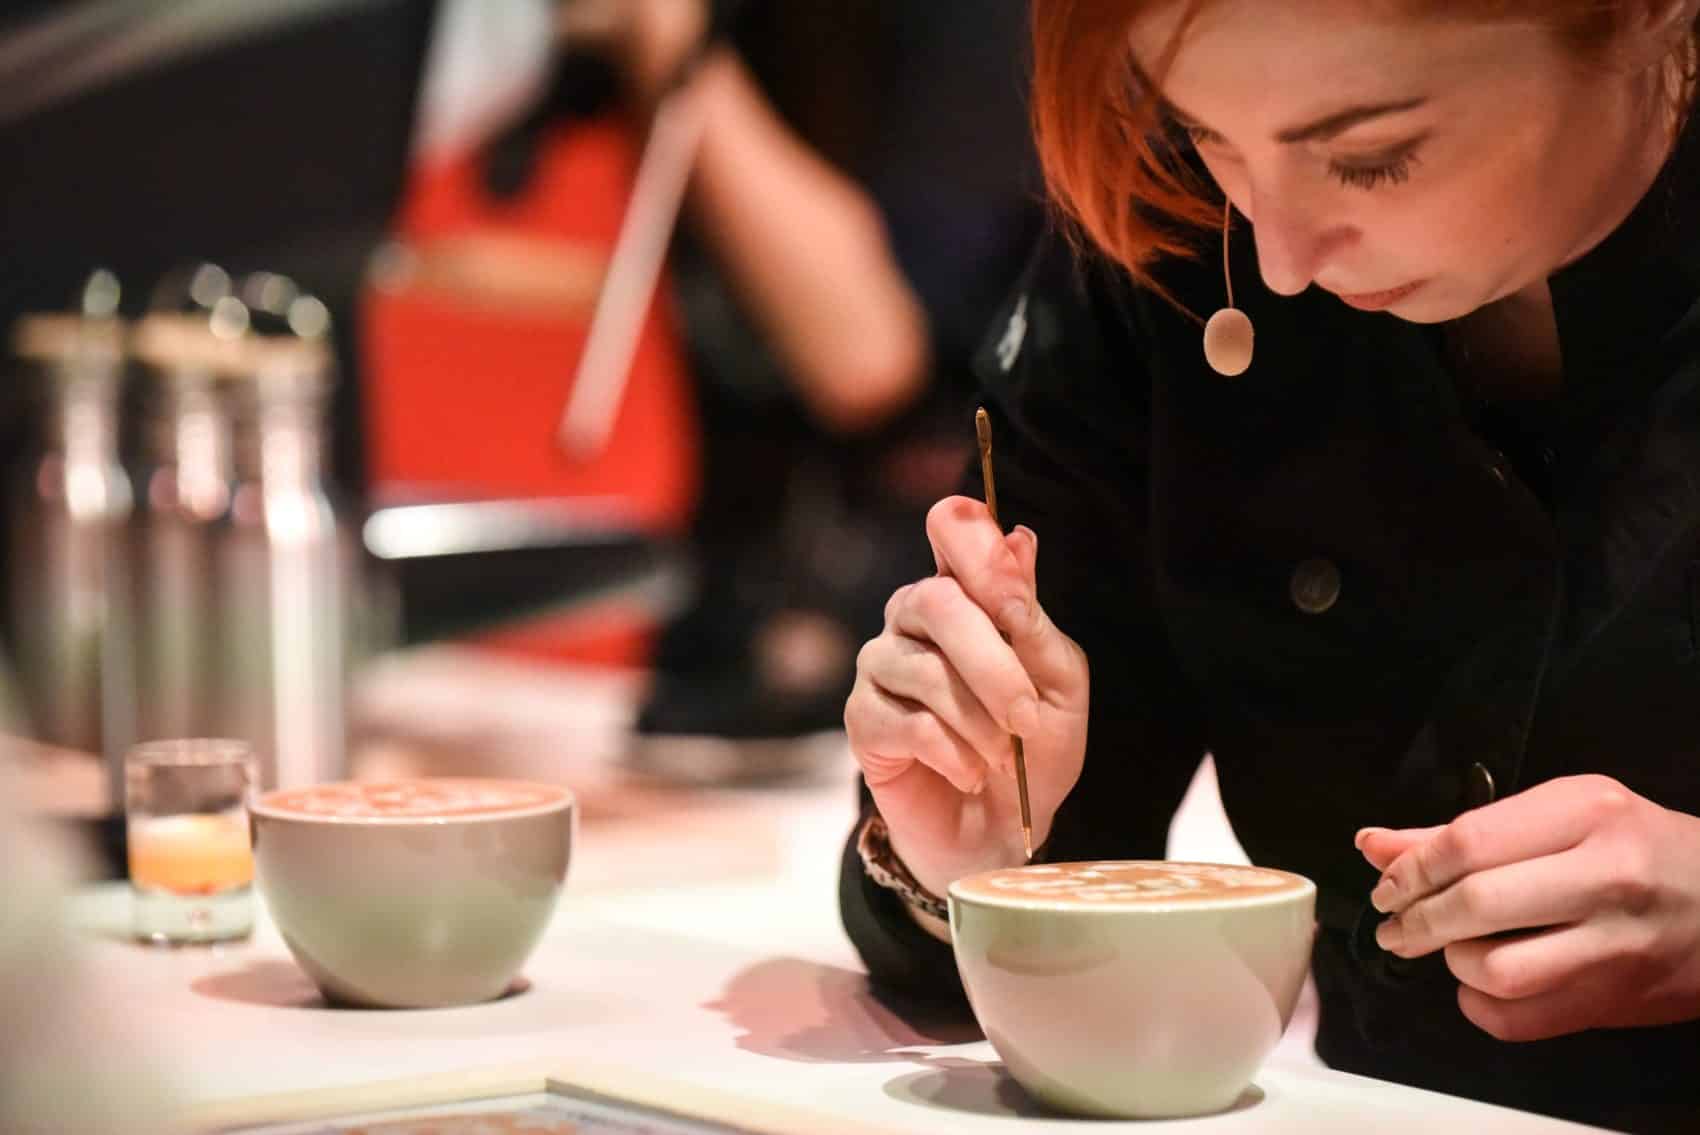 Tamara Nadolph musste sich bei der Herstellung ihrer Kaffee-Kunstwerke stark konzentrieren.